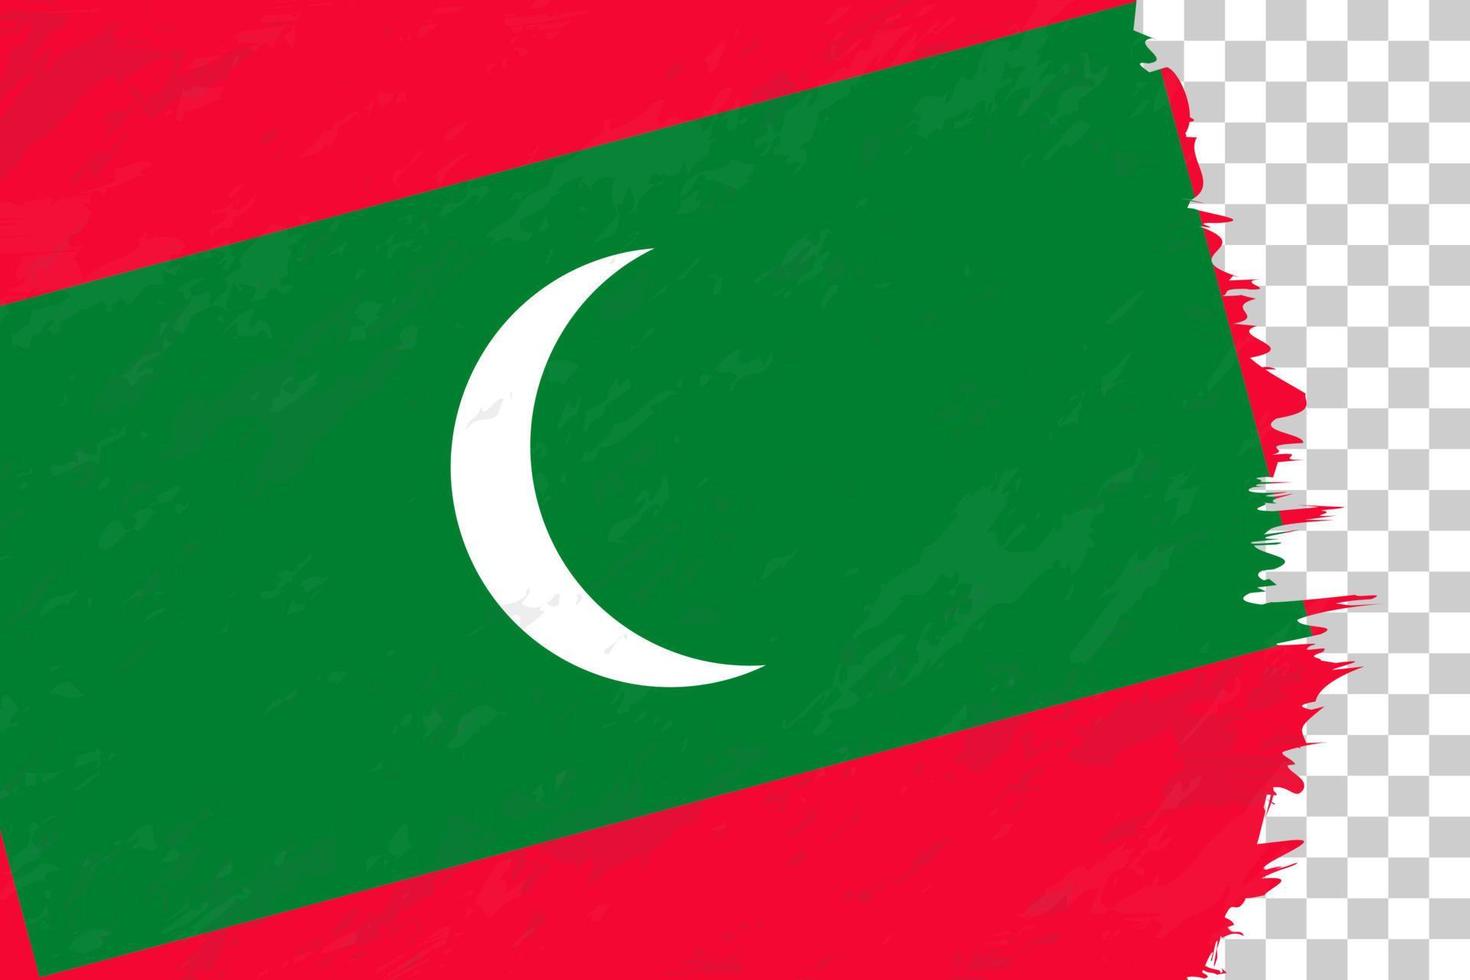 orizzontale astratto grunge spazzolato bandiera delle Maldive sulla griglia trasparente. vettore